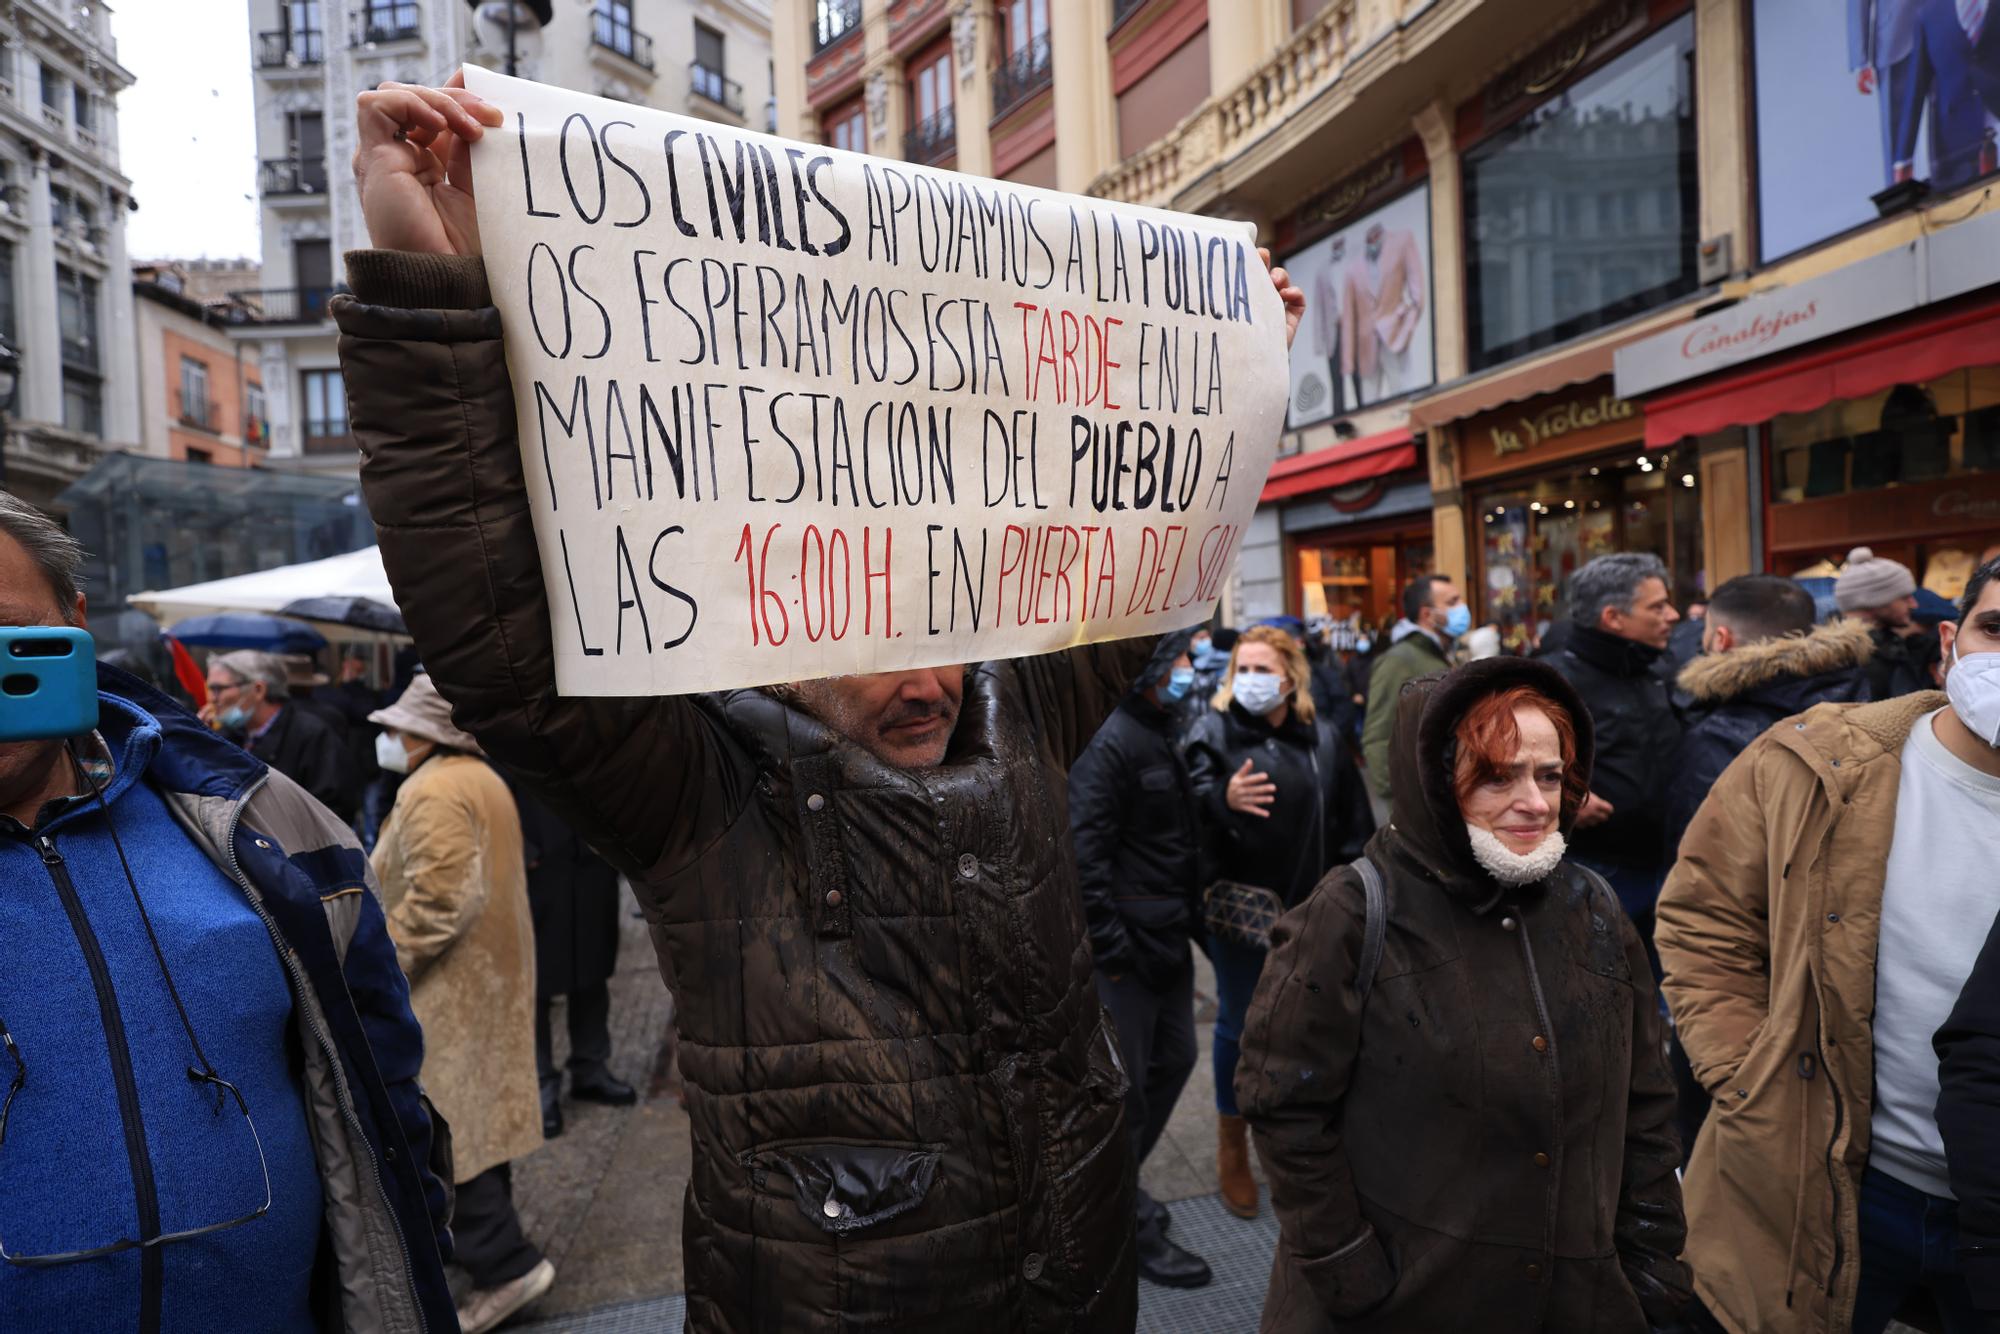 Representación de policías y guardias civiles alicantinos en la manifestación en contra de la "Ley Mordaza" en Madrid